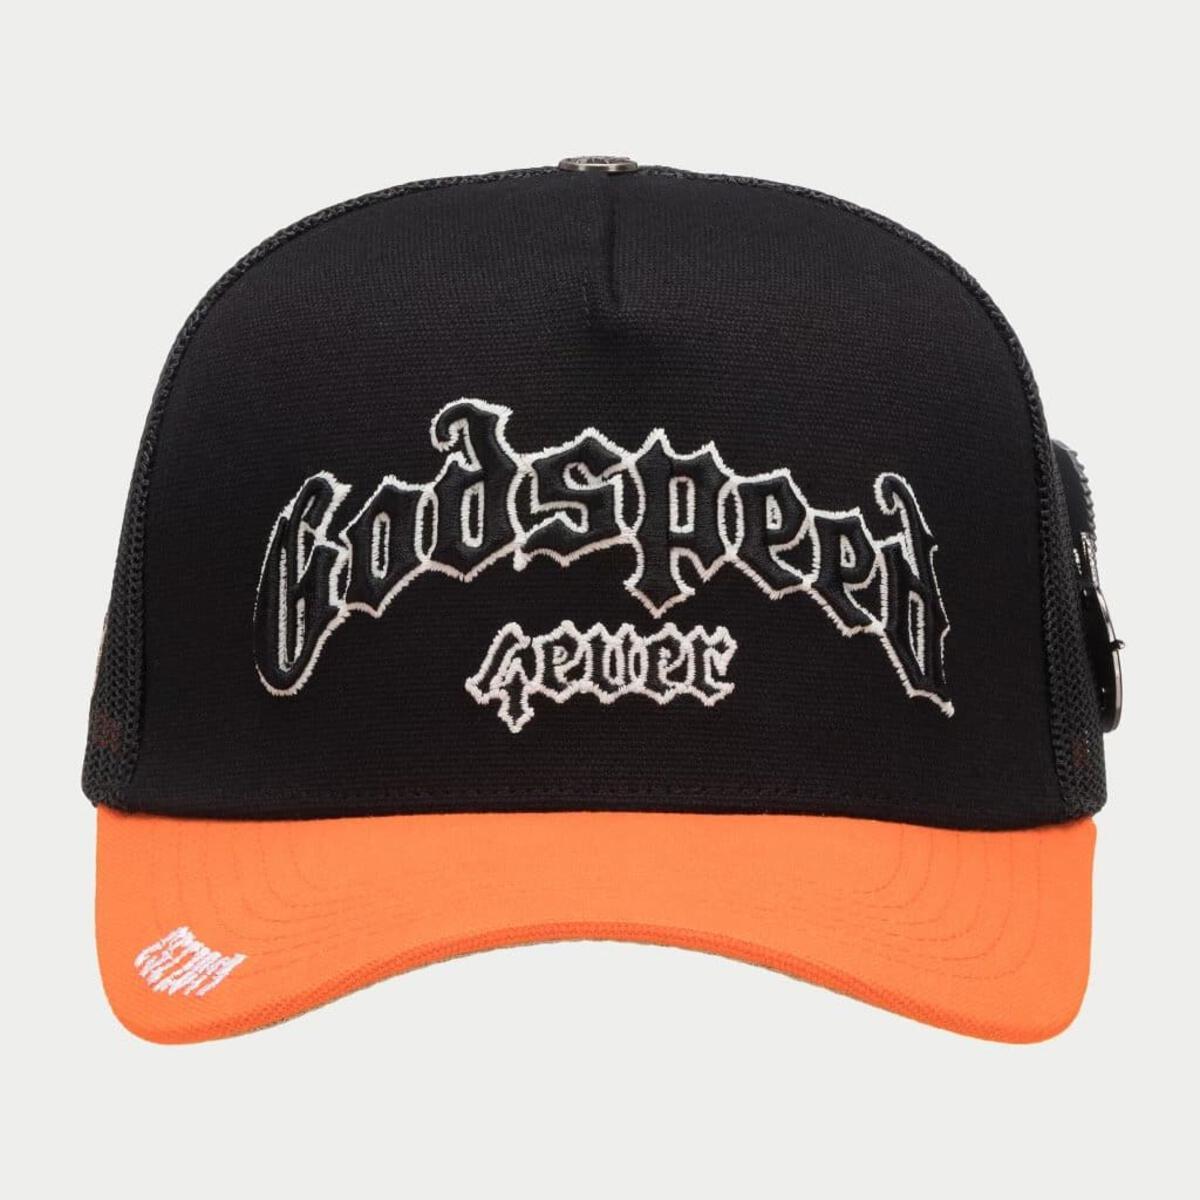 GODSPEED GS FOREVER TRUCKER HAT BLACK/ORANGE